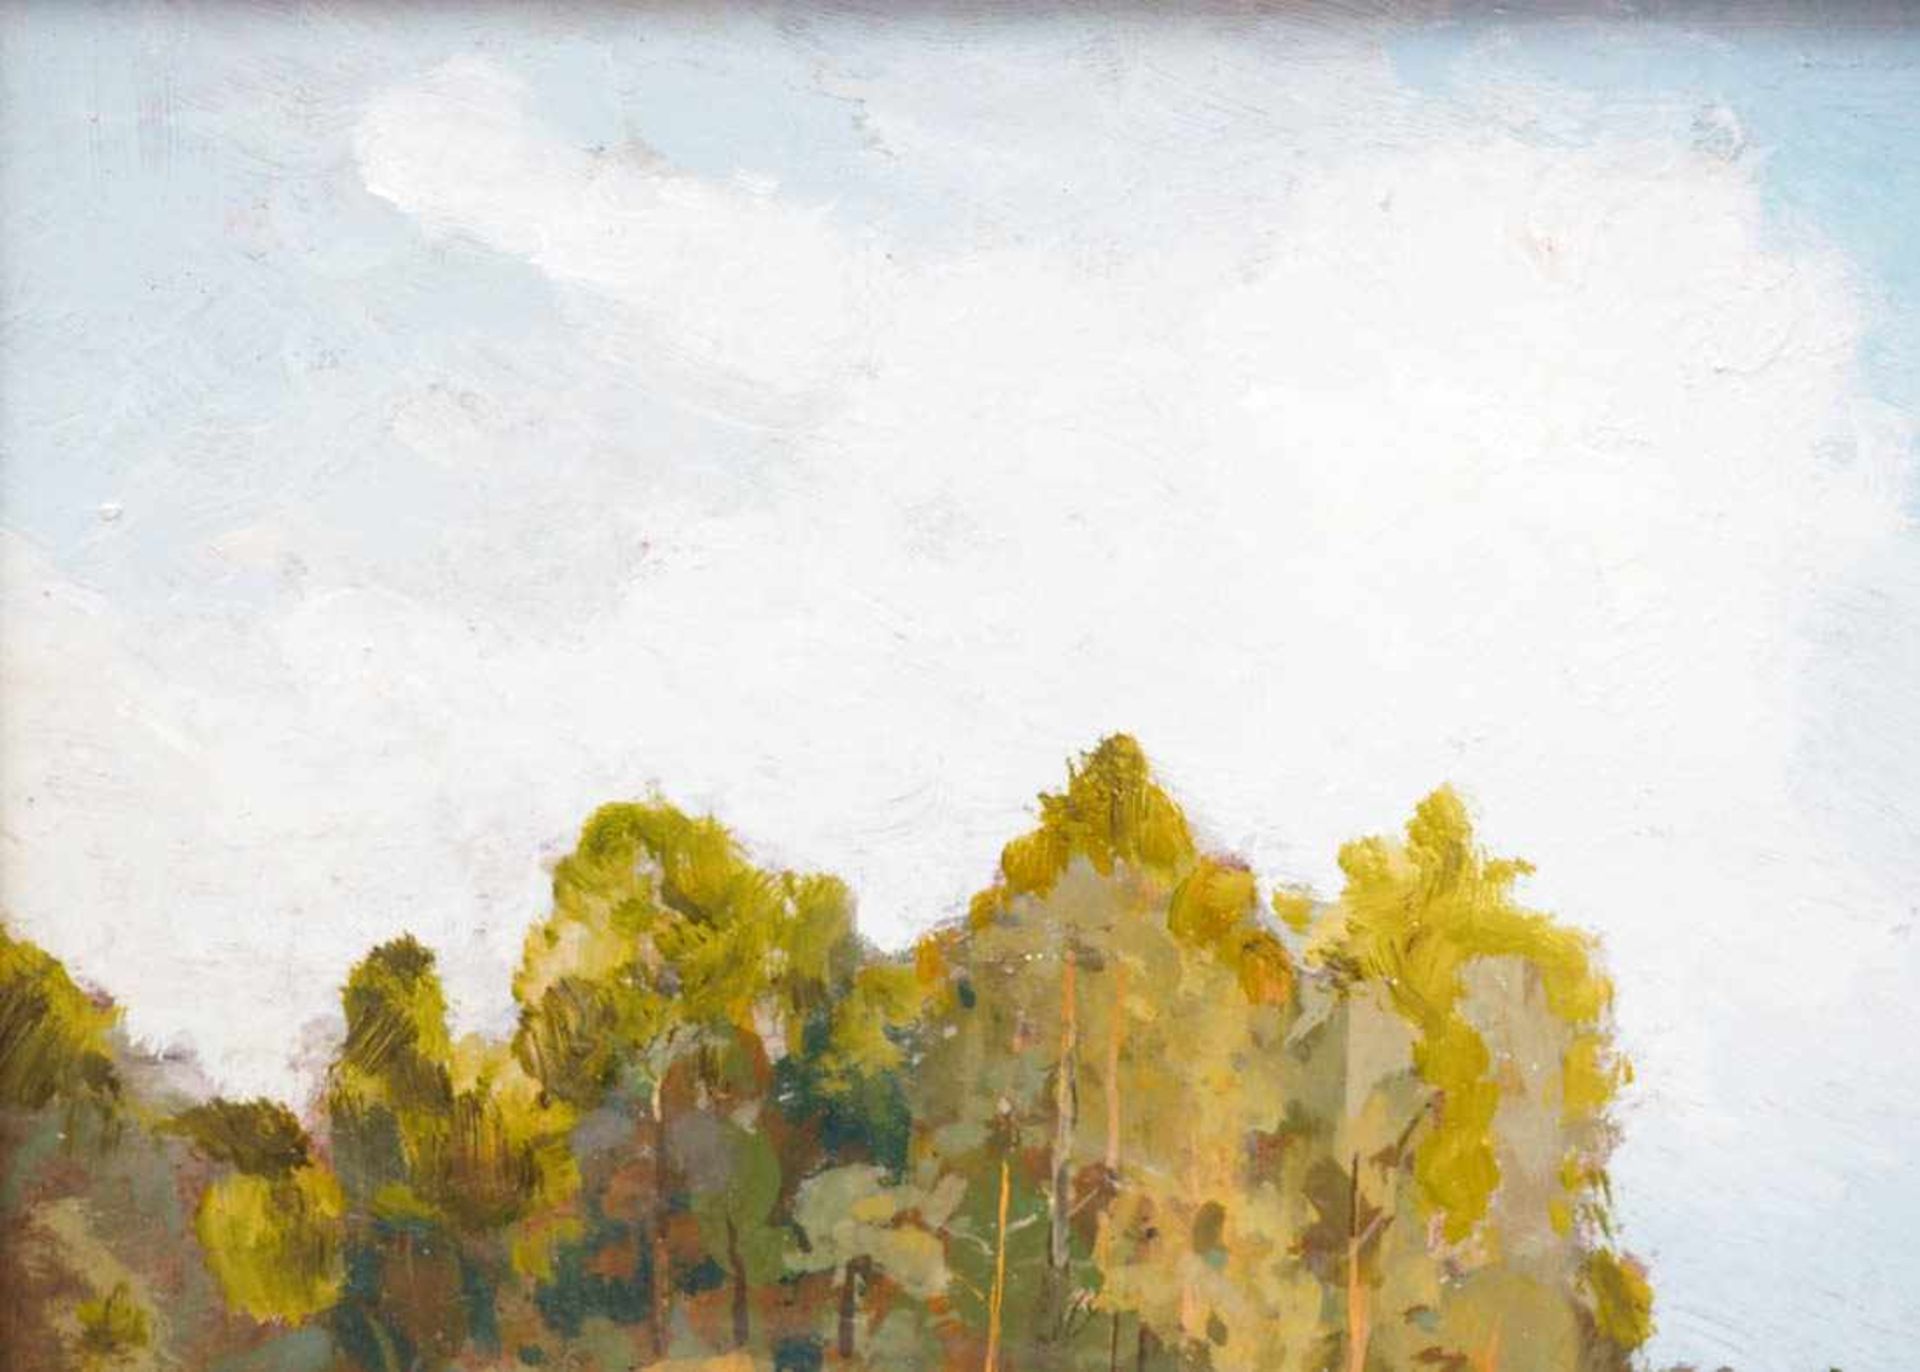 Strübe, Adolf, 1881 - 1973Markgräfler Landschaft mit Laubbäumen unter sommerblauem Himmel. Öl/Kt., - Bild 2 aus 6